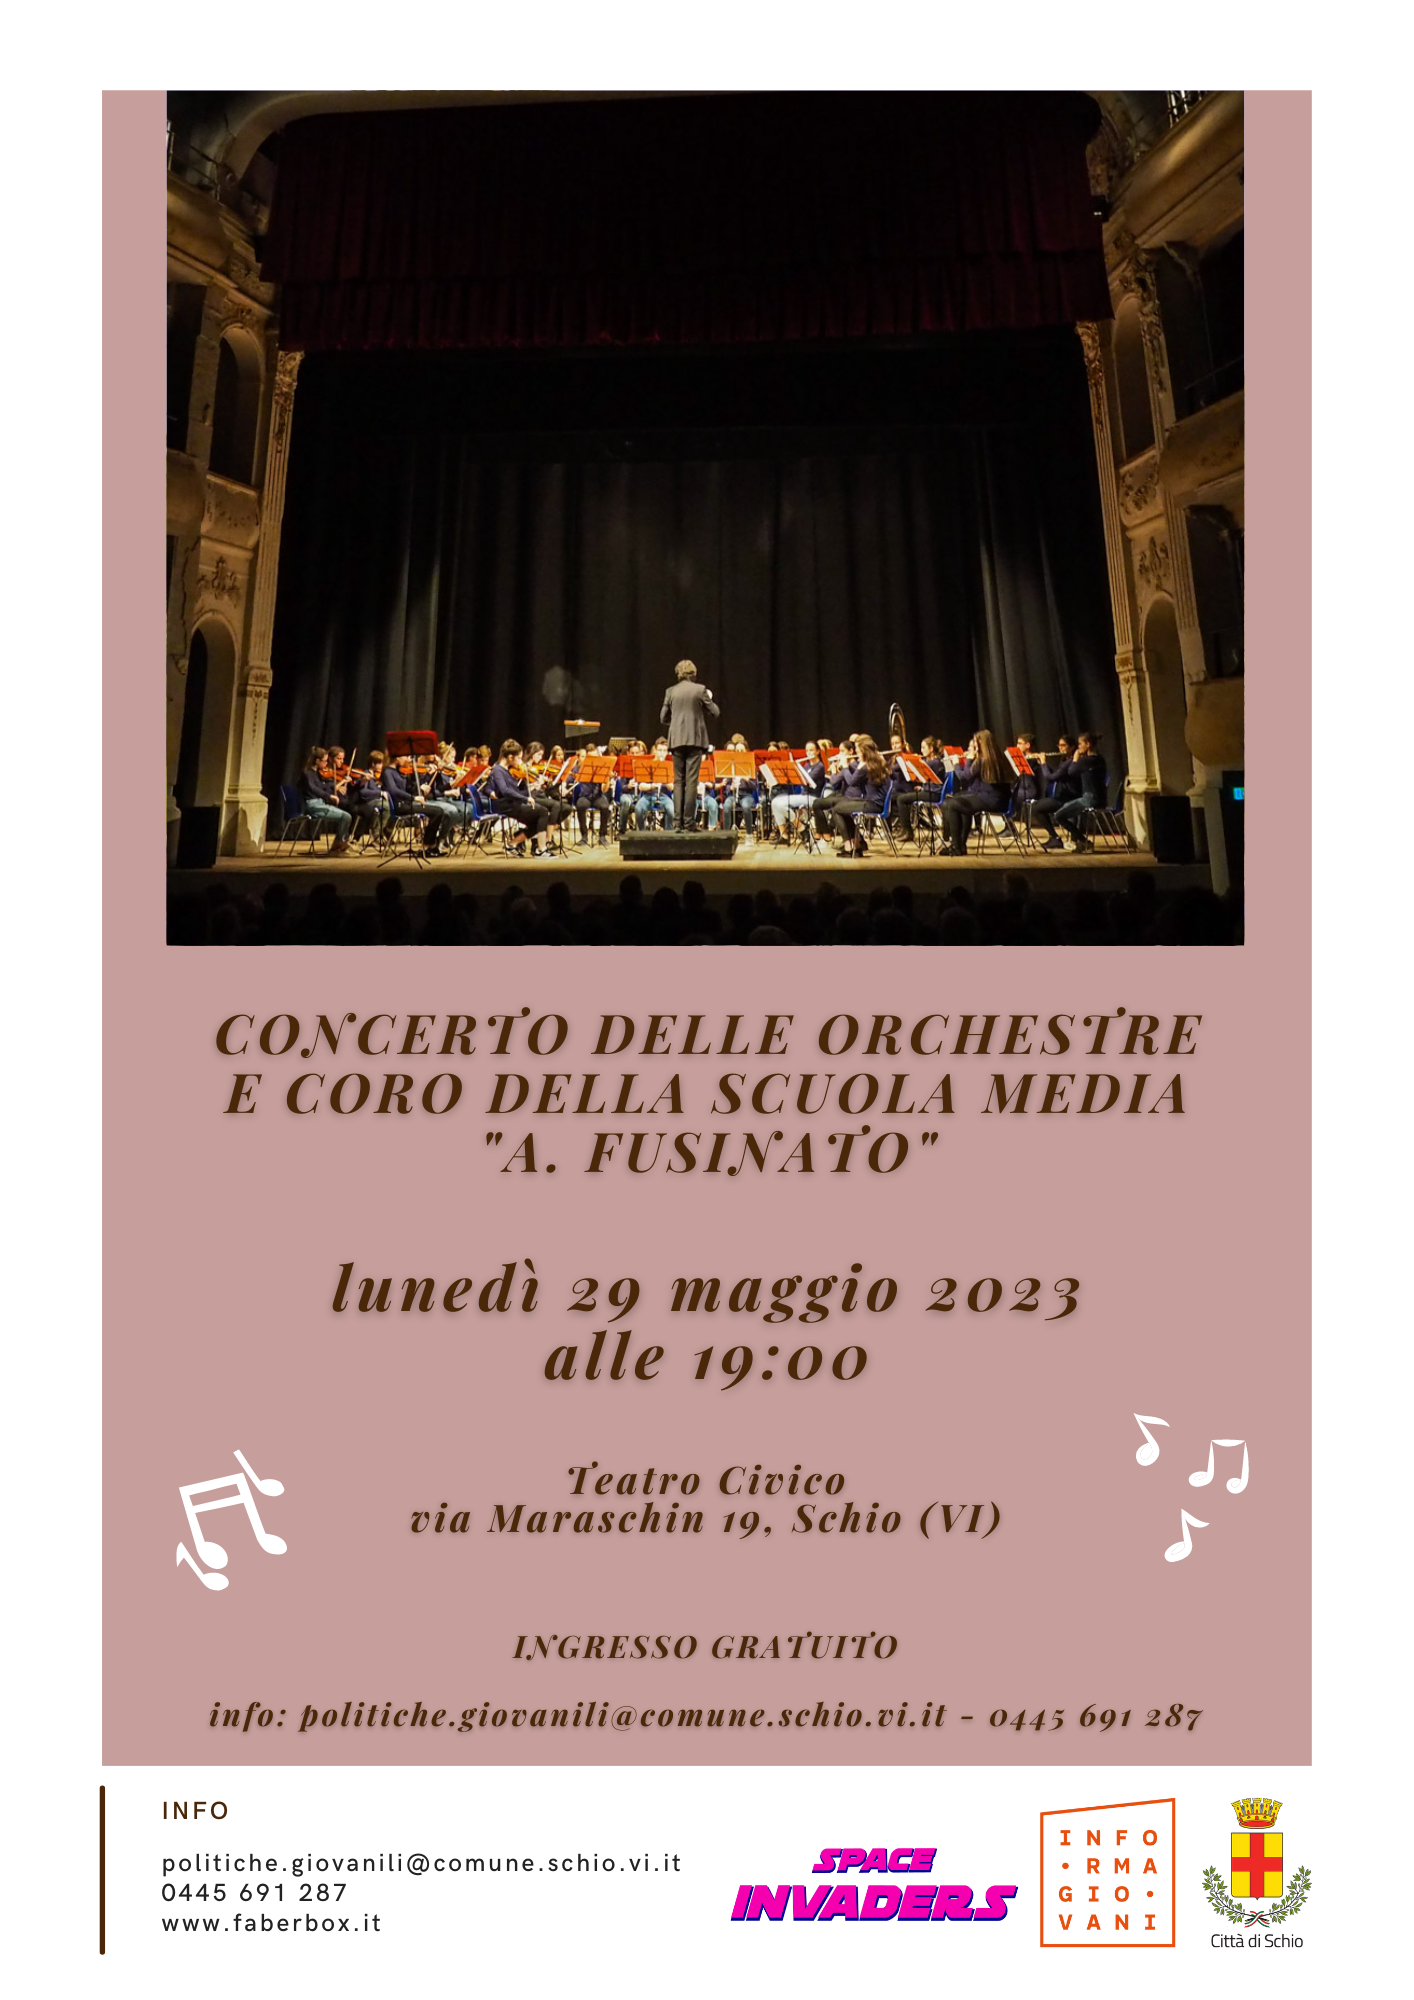 Concerto delle Orchestre e coro delle Scuole medie “A. Fusinato”